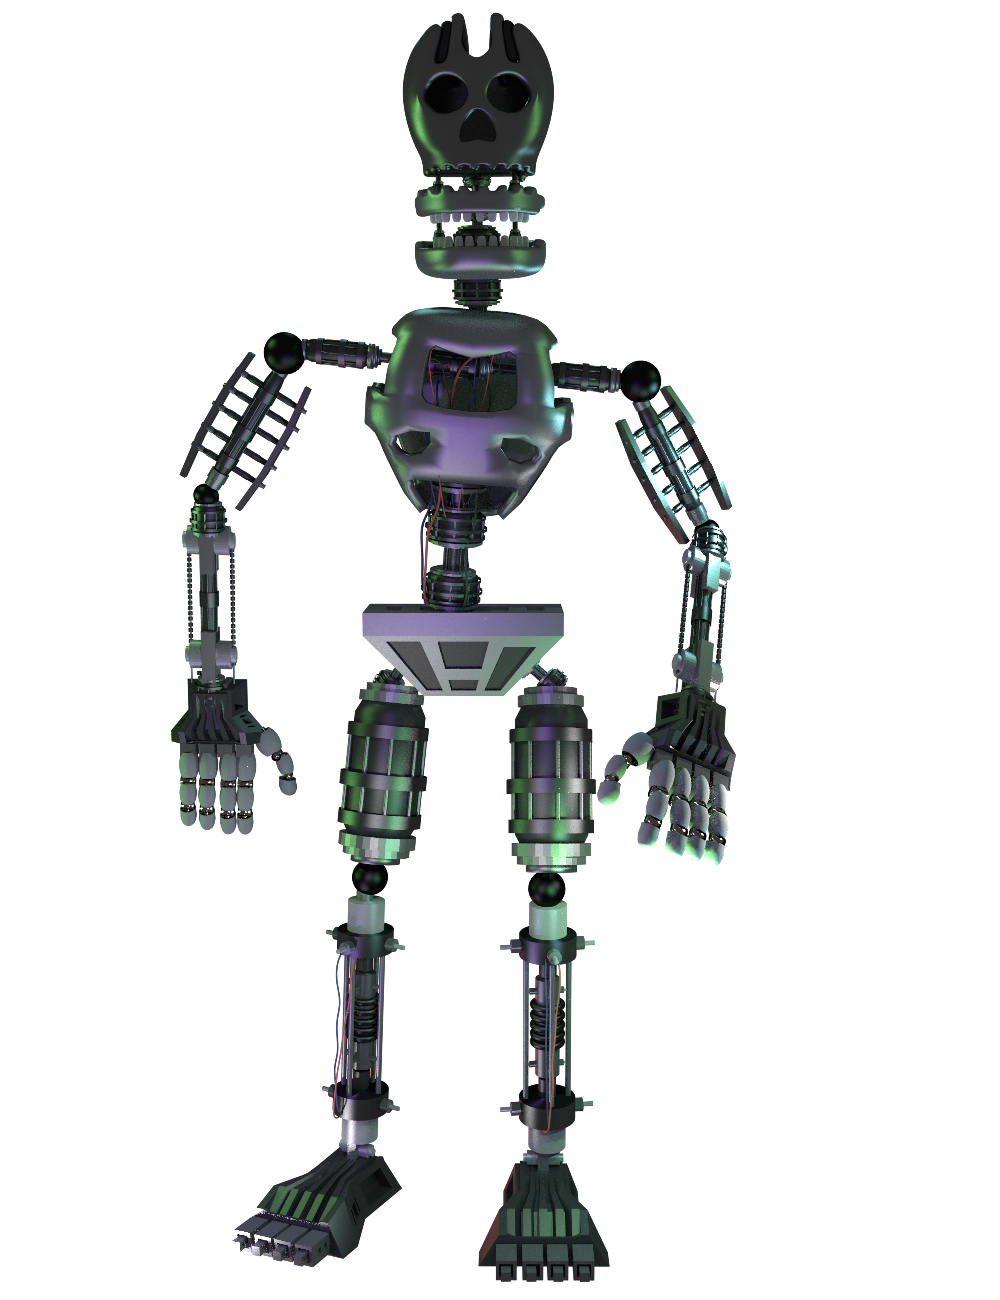 FNAF 4Spring Endoskeleton by MichaelV on DeviantArt